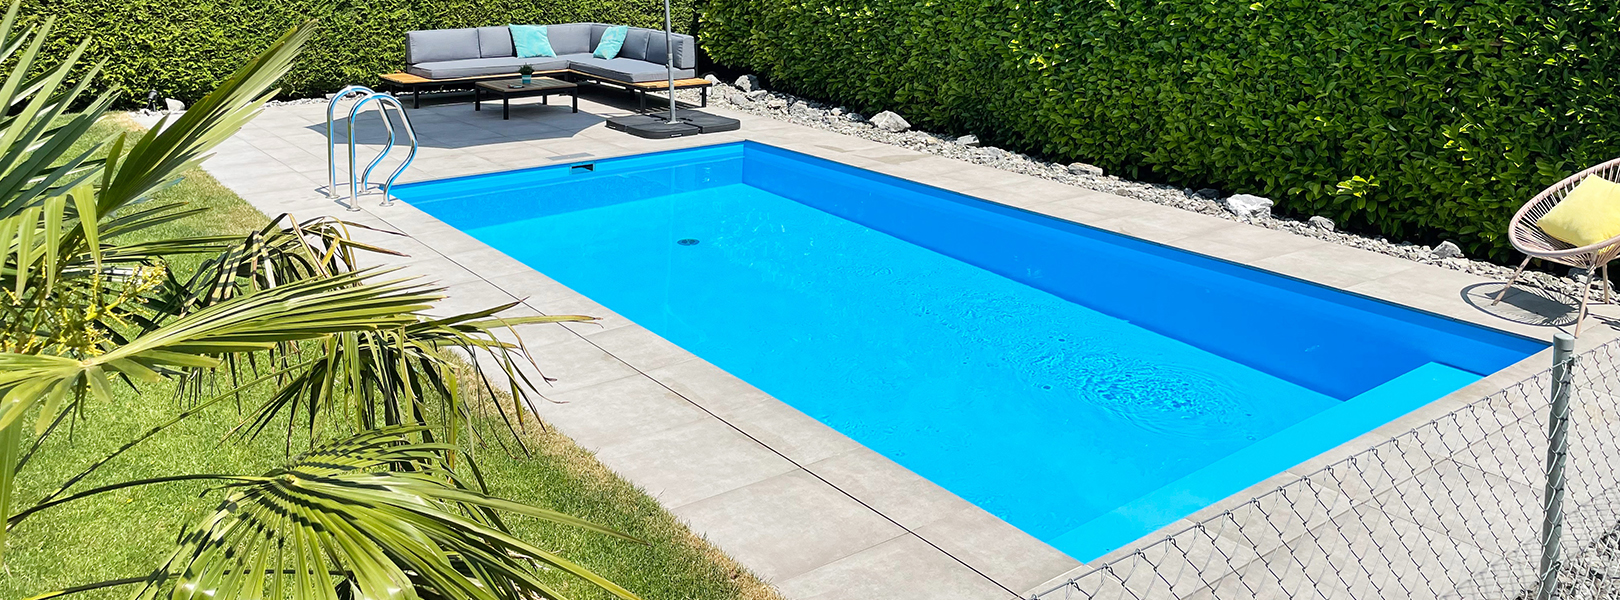 Massgefertigte Pools aus Beton sind nicht nur robust und langlebig, sondern auch ästhetisch ansprechend.